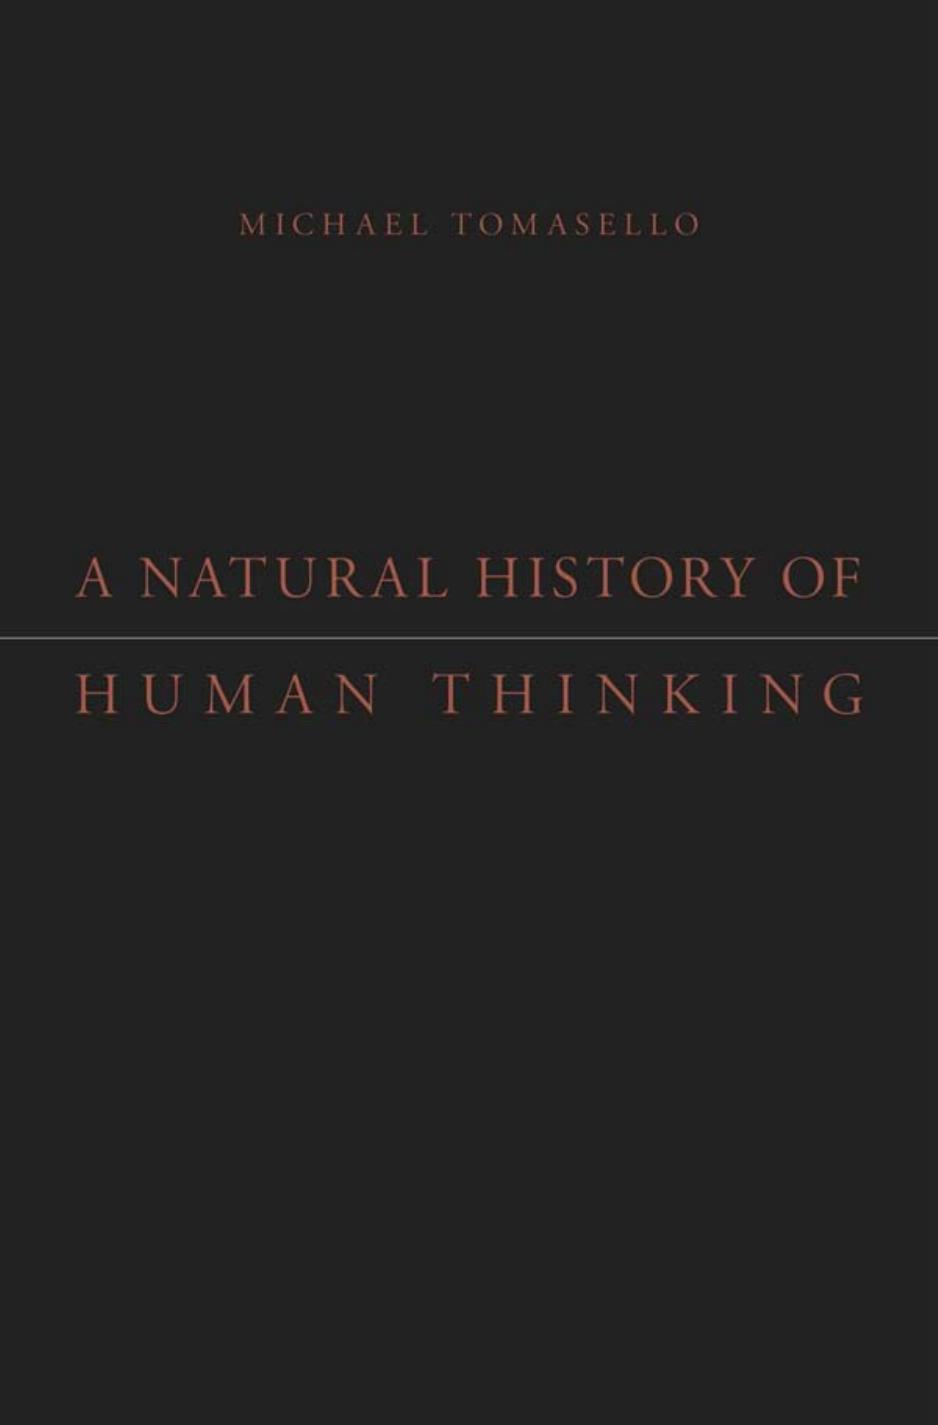 A Natural History of Human Thinking by Michael Tomasello